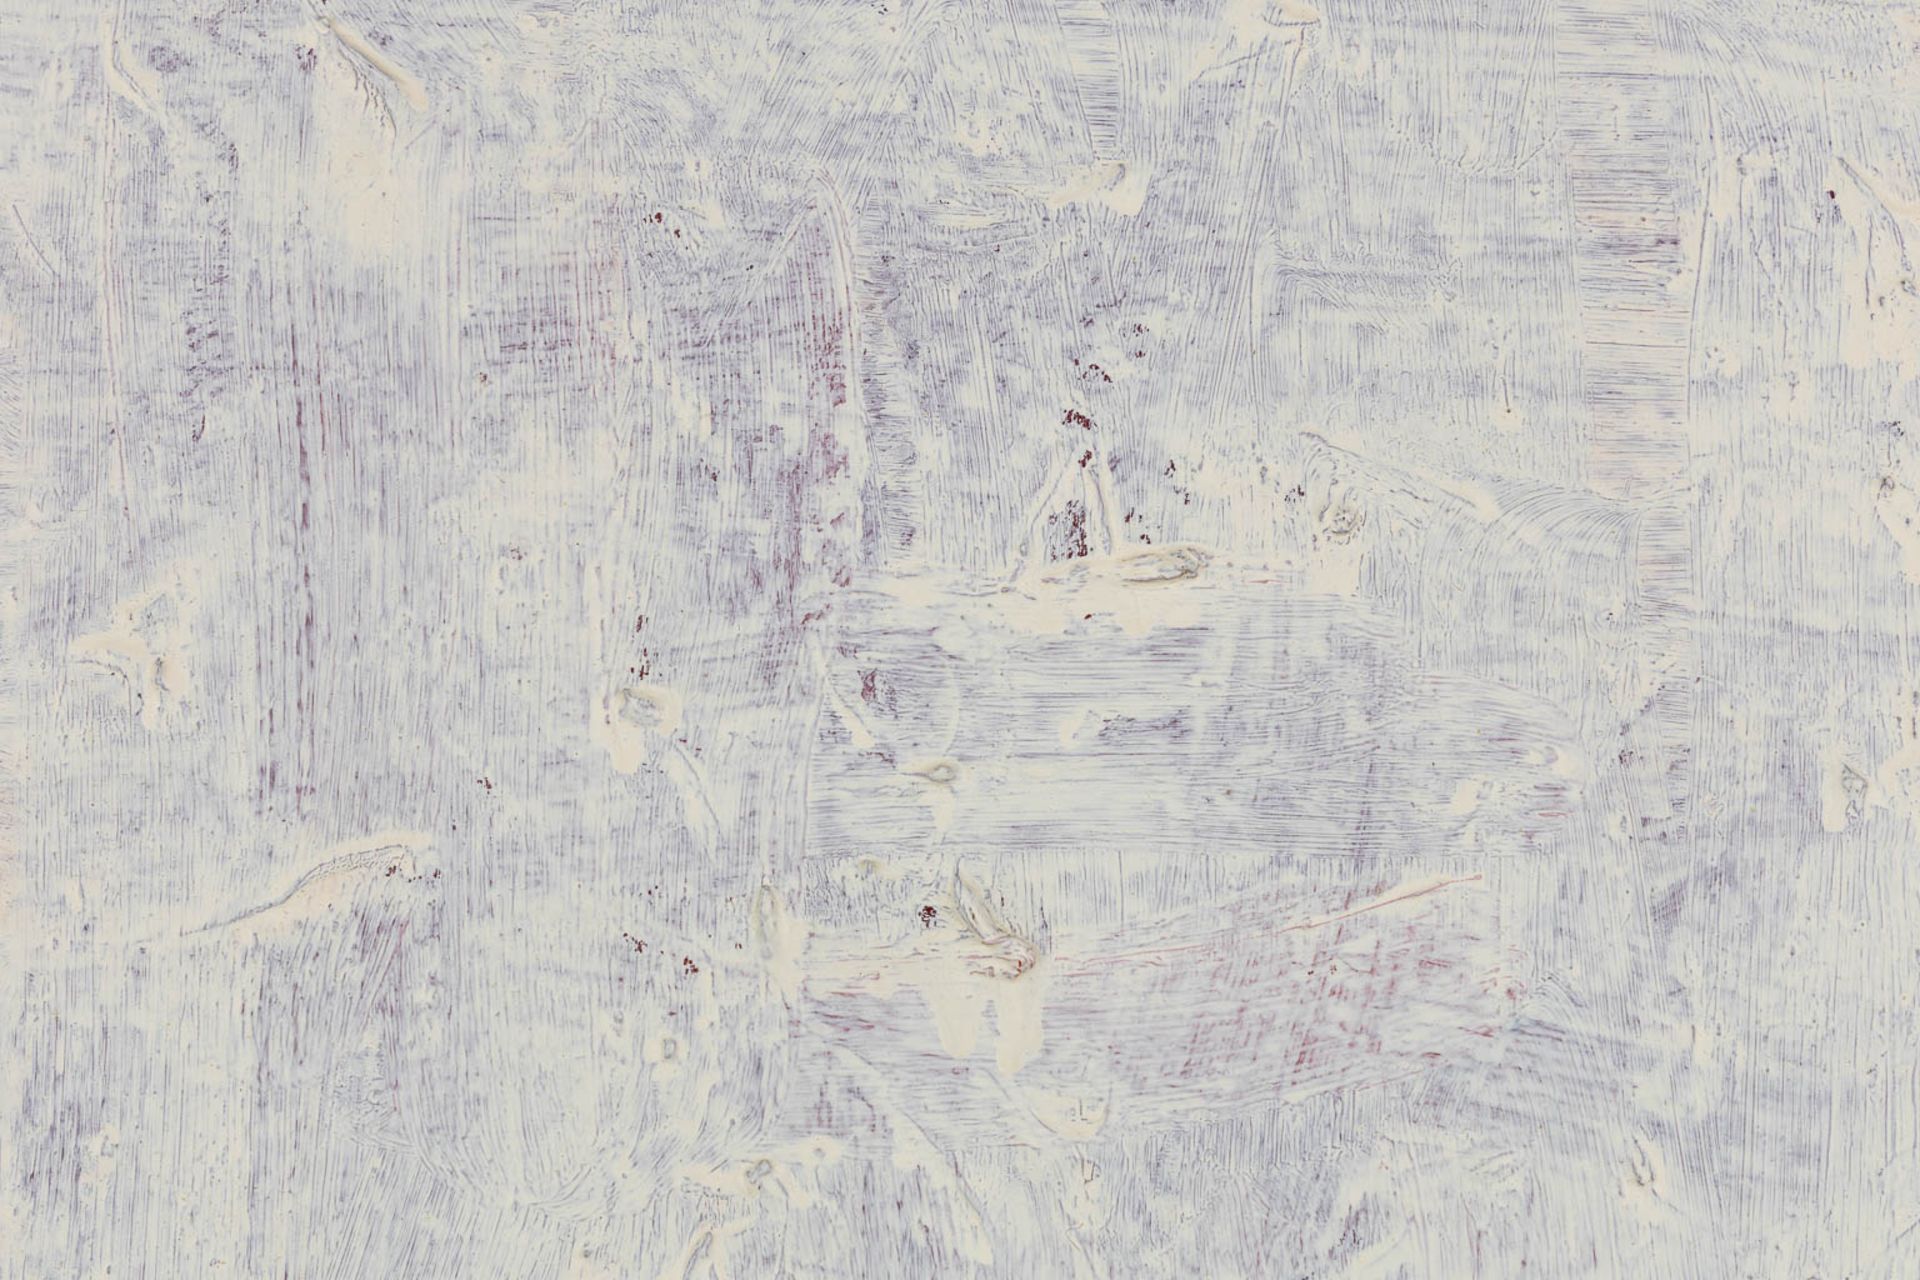 Huguette VAN DEN KIEBOOM (1931 - 2019) 'Abstract Wit' oil on canvas. (W:60 x H:70 cm) - Image 2 of 9